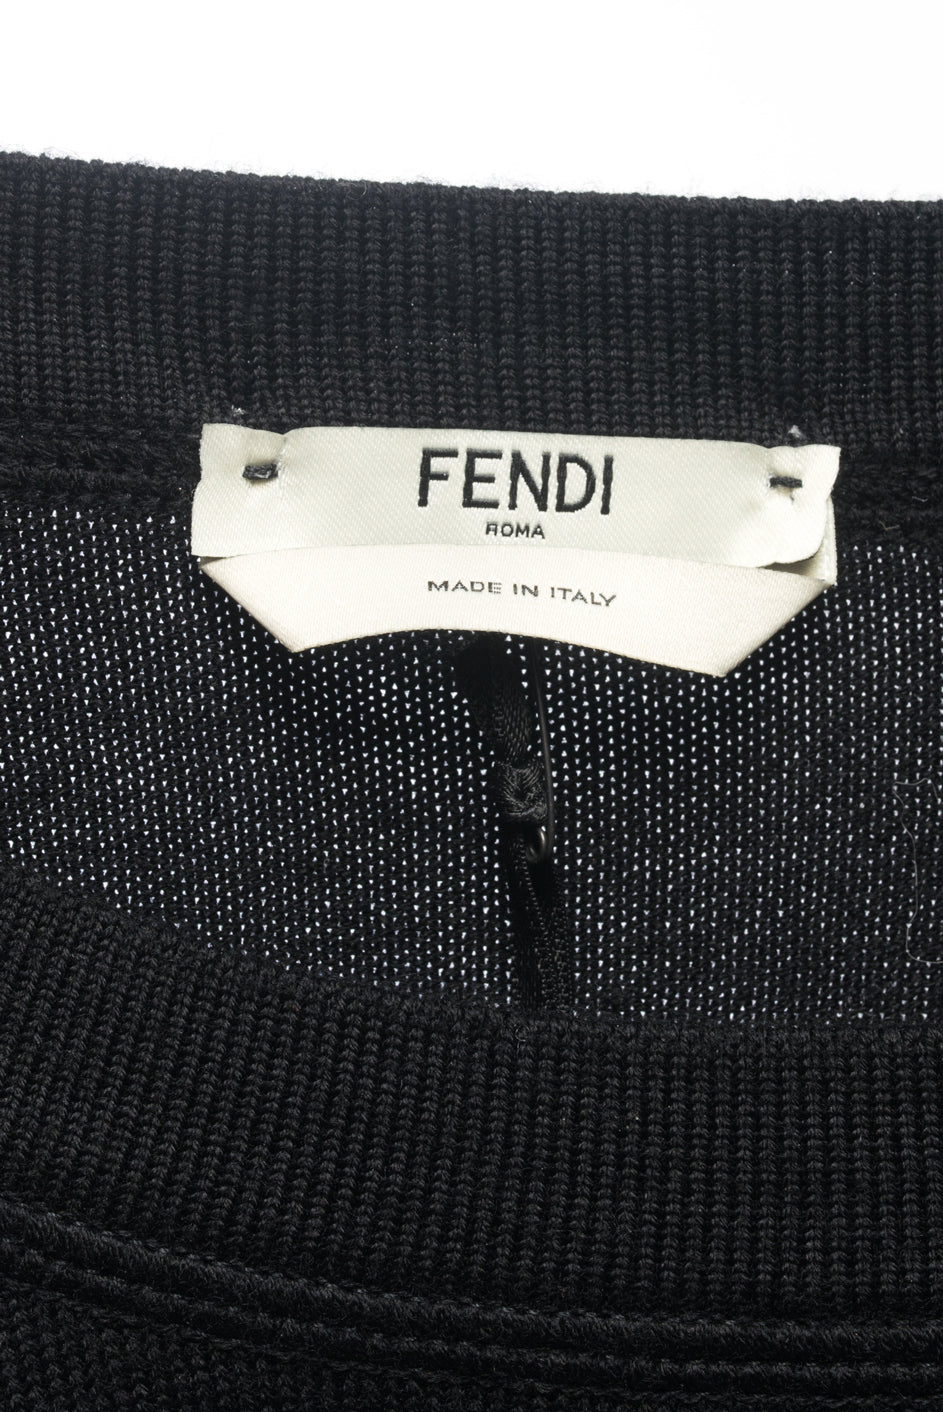 Fendi Black and Pink Knit Monster Bag Bug Fur Eyes Sweater - 4